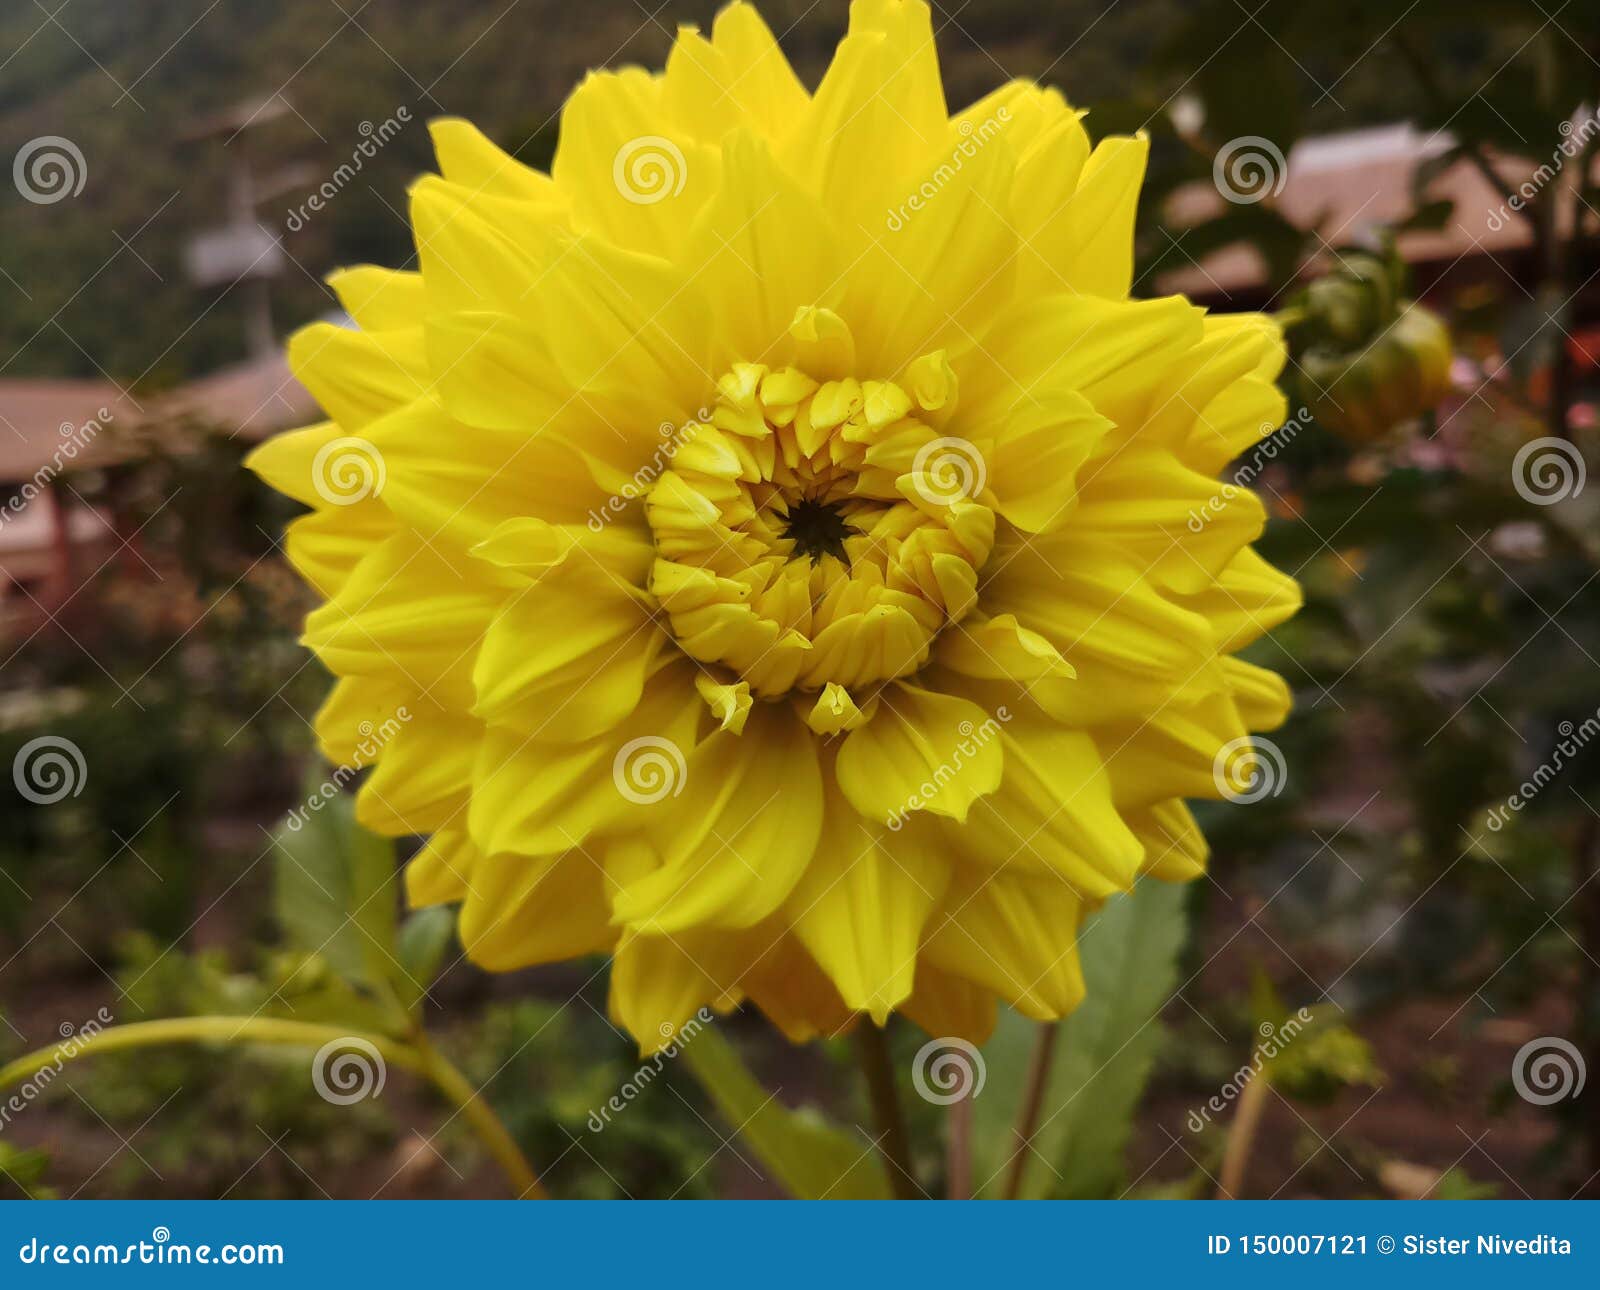 Dahlia National Flower Amarela Da Jardinagem De Flor Indiana De Beautyful  Da Natureza De Maxico Imagem de Stock - Imagem de amarelo, jardinar:  150007121